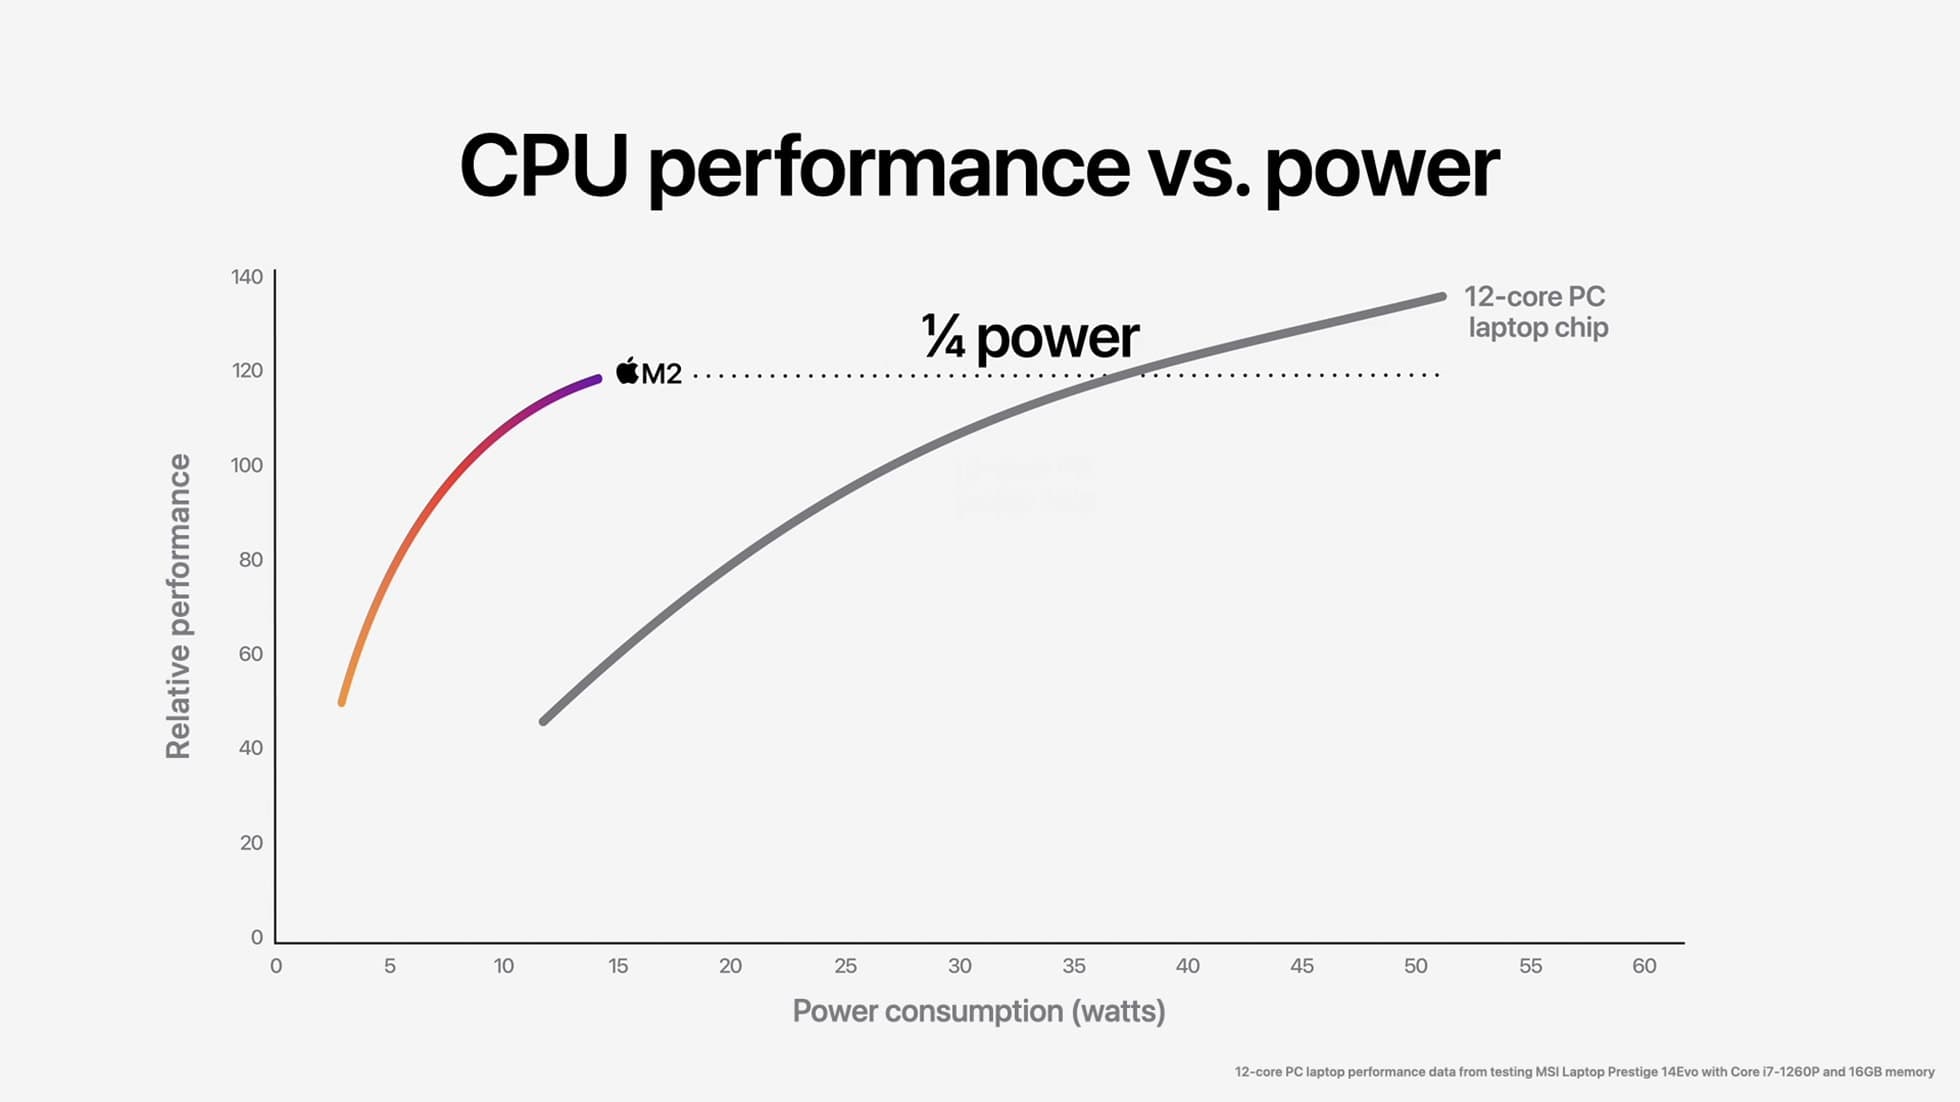 最新 12 核心 PC 筆記型電腦晶片需要使用極大功耗才能讓效能提升。相較之下，M2 晶片僅需使用四分之一的功耗，即能達到 12 核心晶片 90% 的峰值效能。